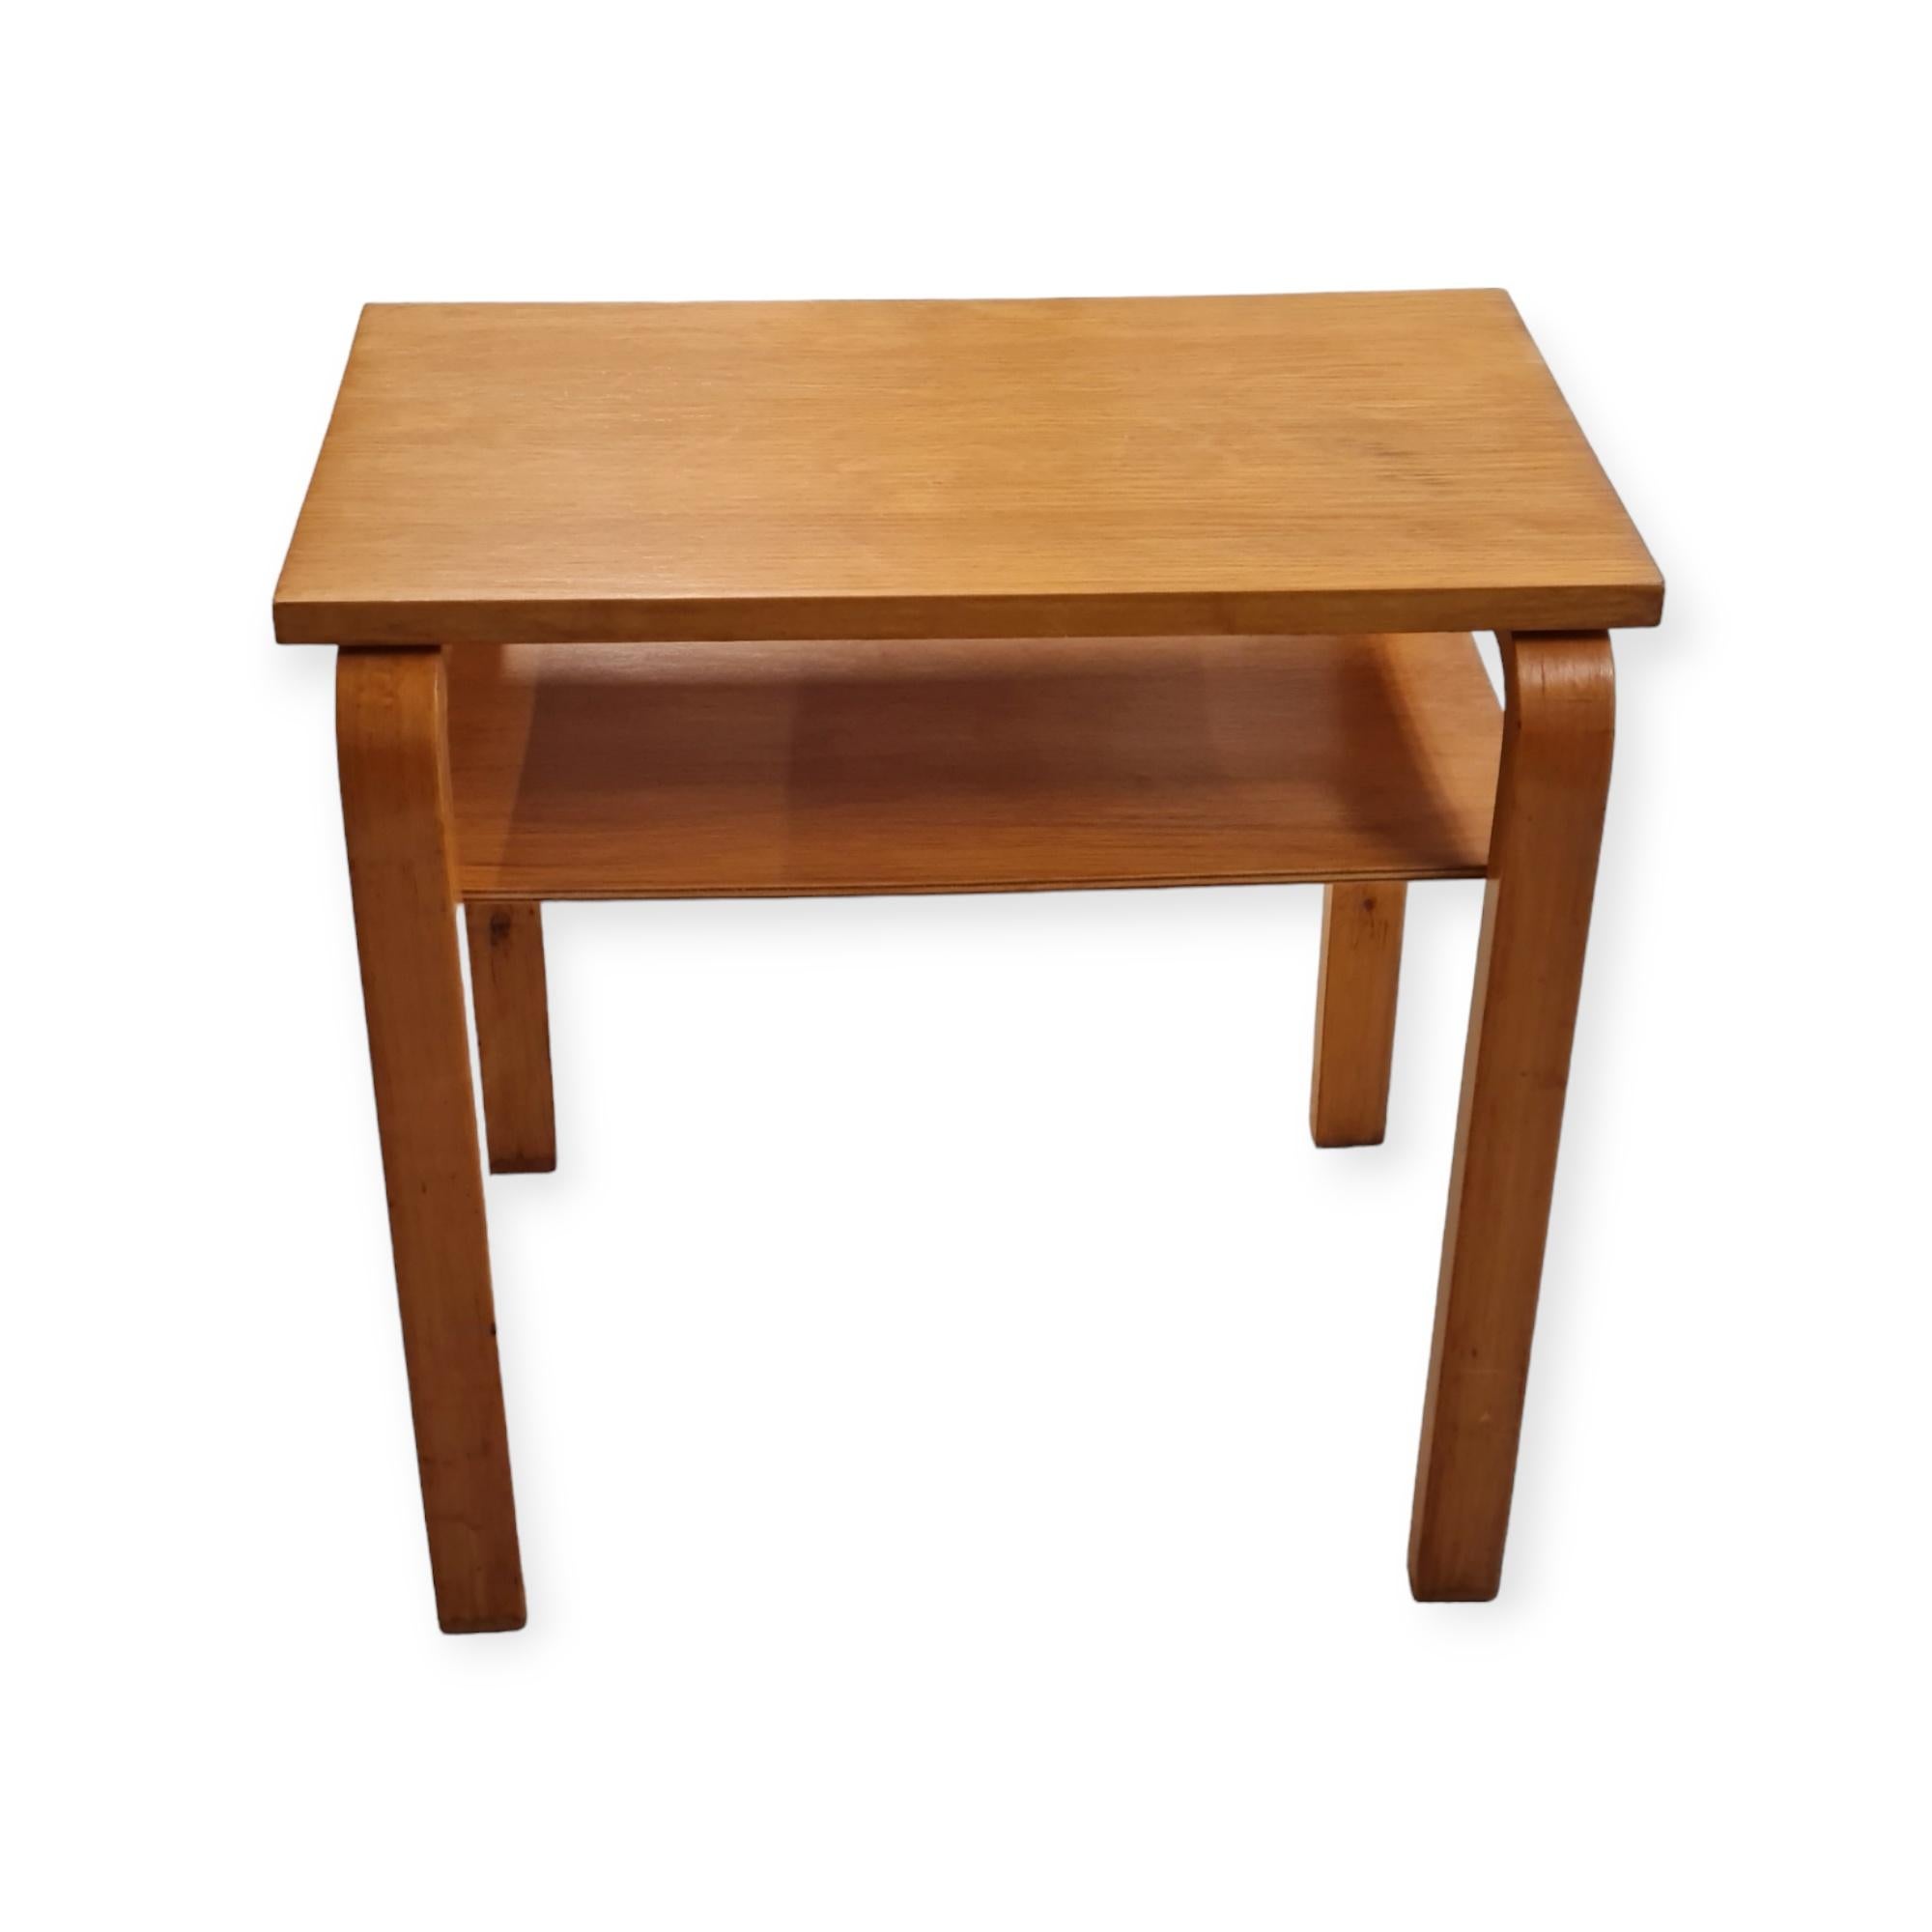 Scandinavian Modern Alvar Aalto Side Table Model A 86 for Artek, 1930s